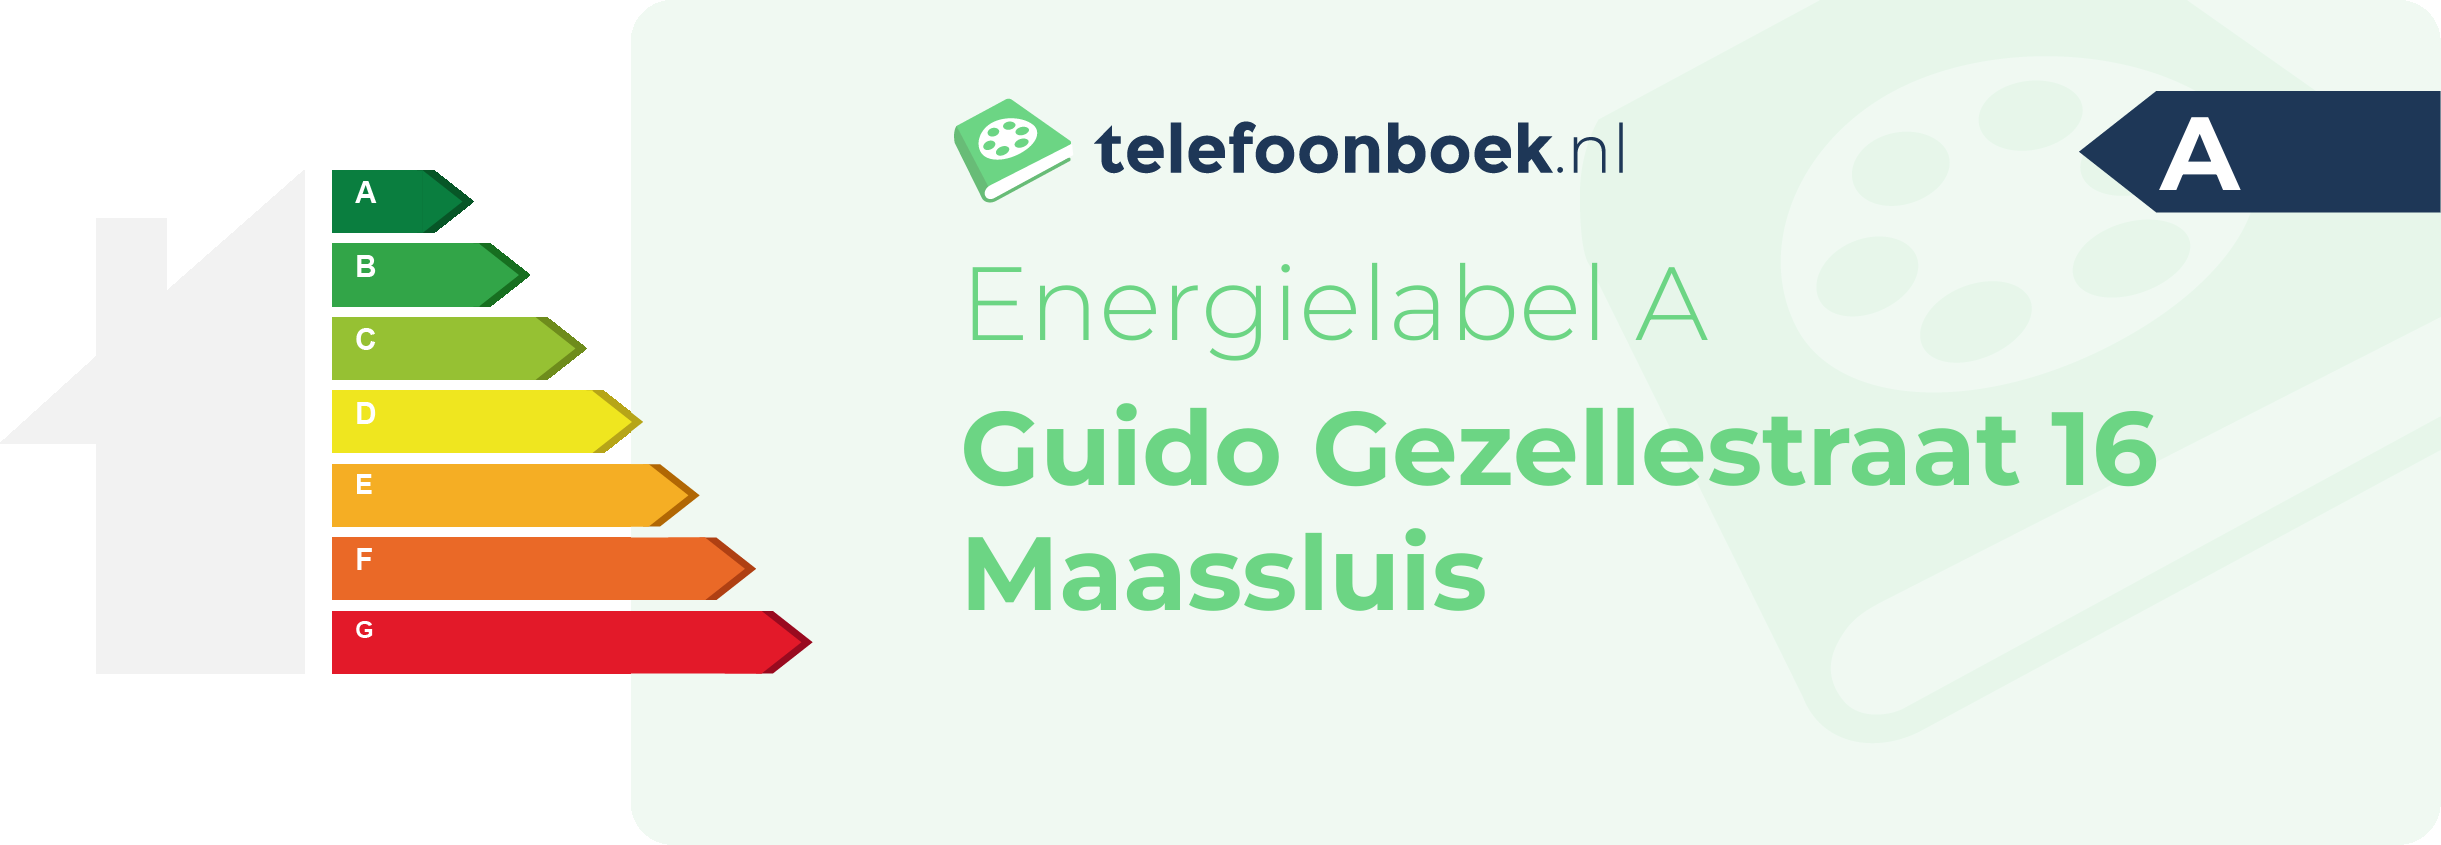 Energielabel Guido Gezellestraat 16 Maassluis